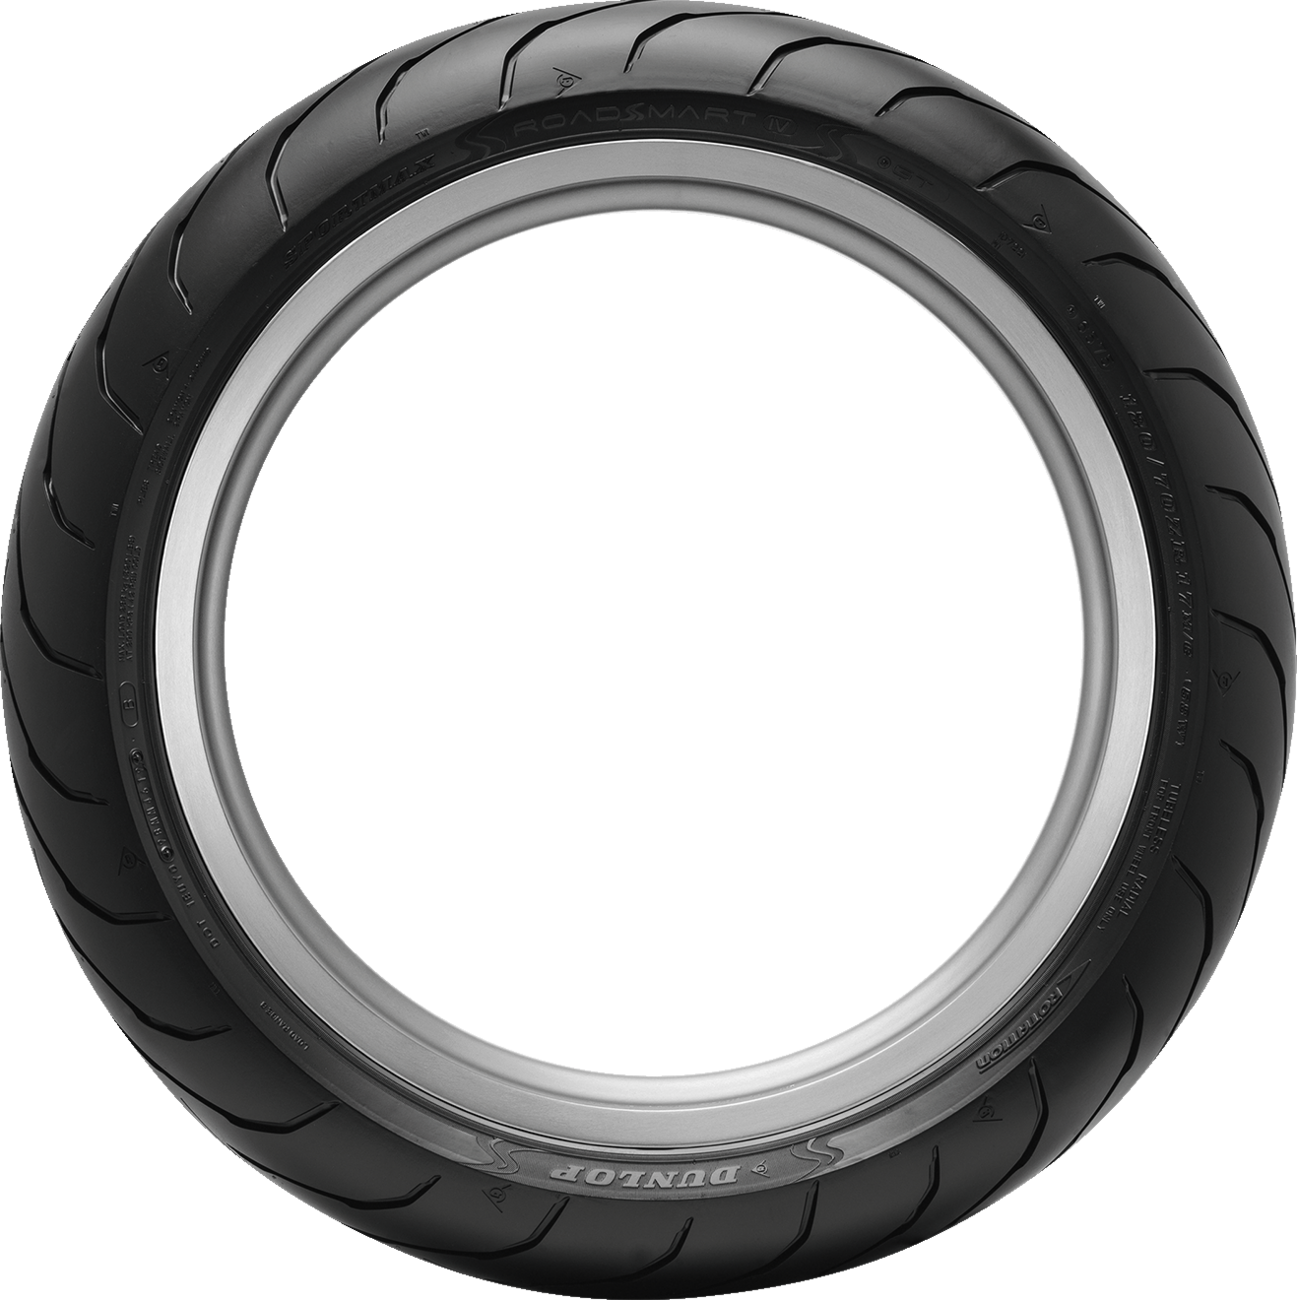 DUNLOP Tire - Sportmax® Roadsmart IV - Front - 120/70ZR18 - (59W) 45253307